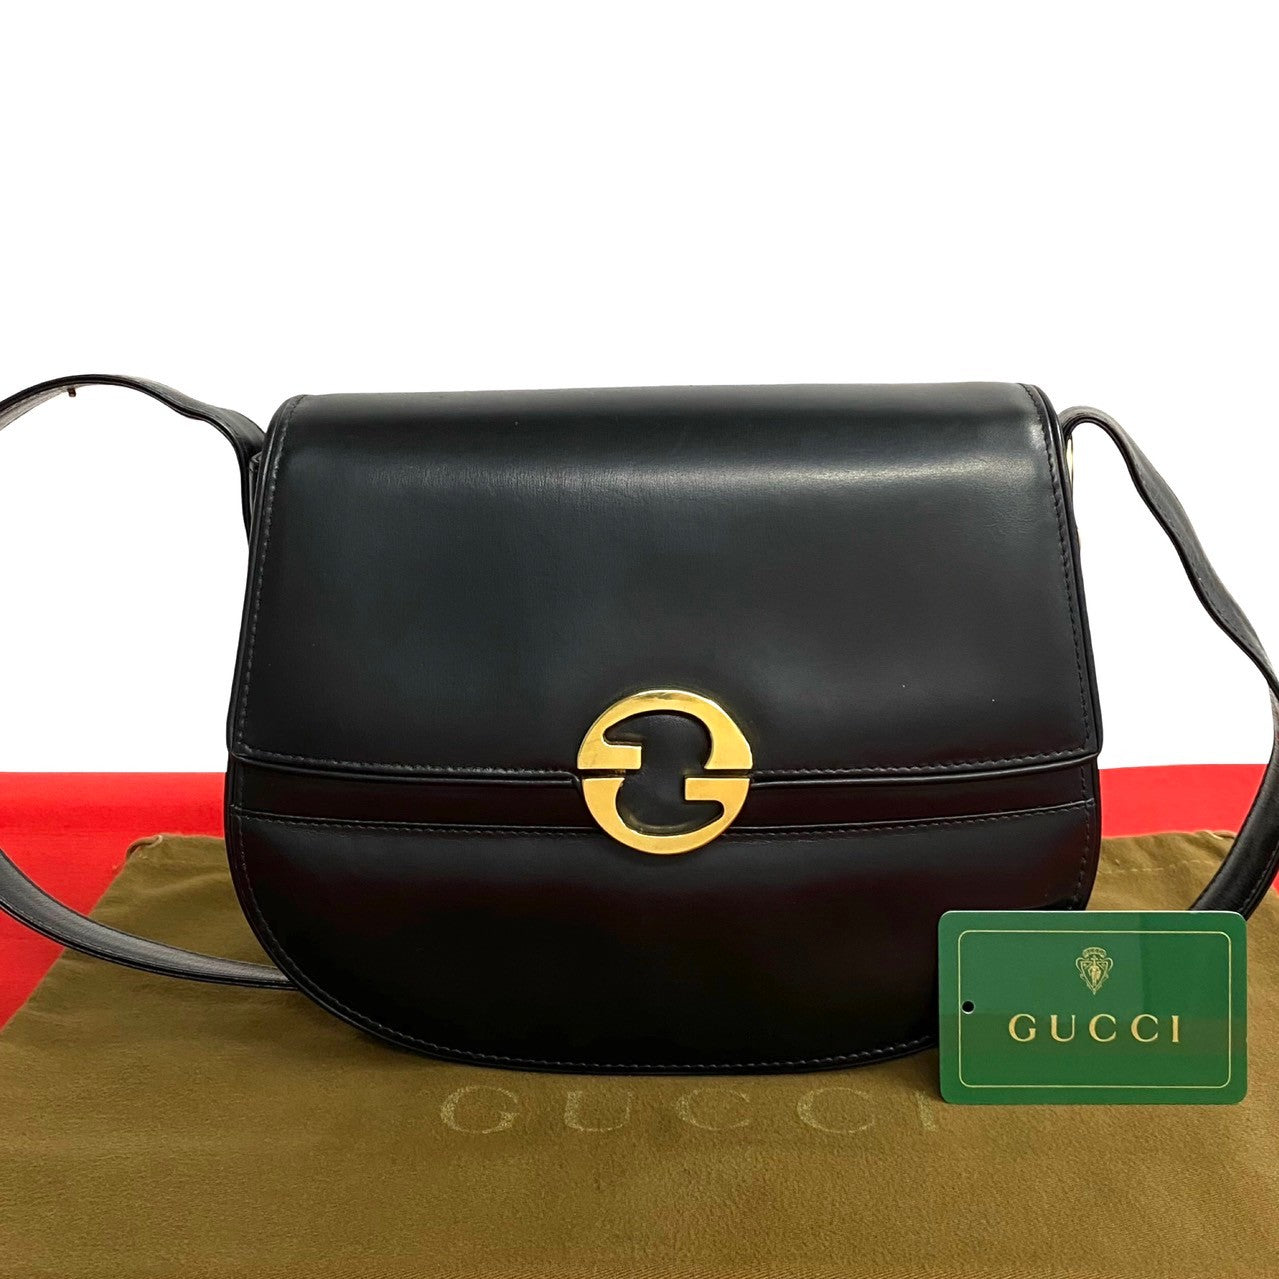 Gucci Old Leather Genuine Shoulder Bag Leather Shoulder Bag 85177 in Good condition